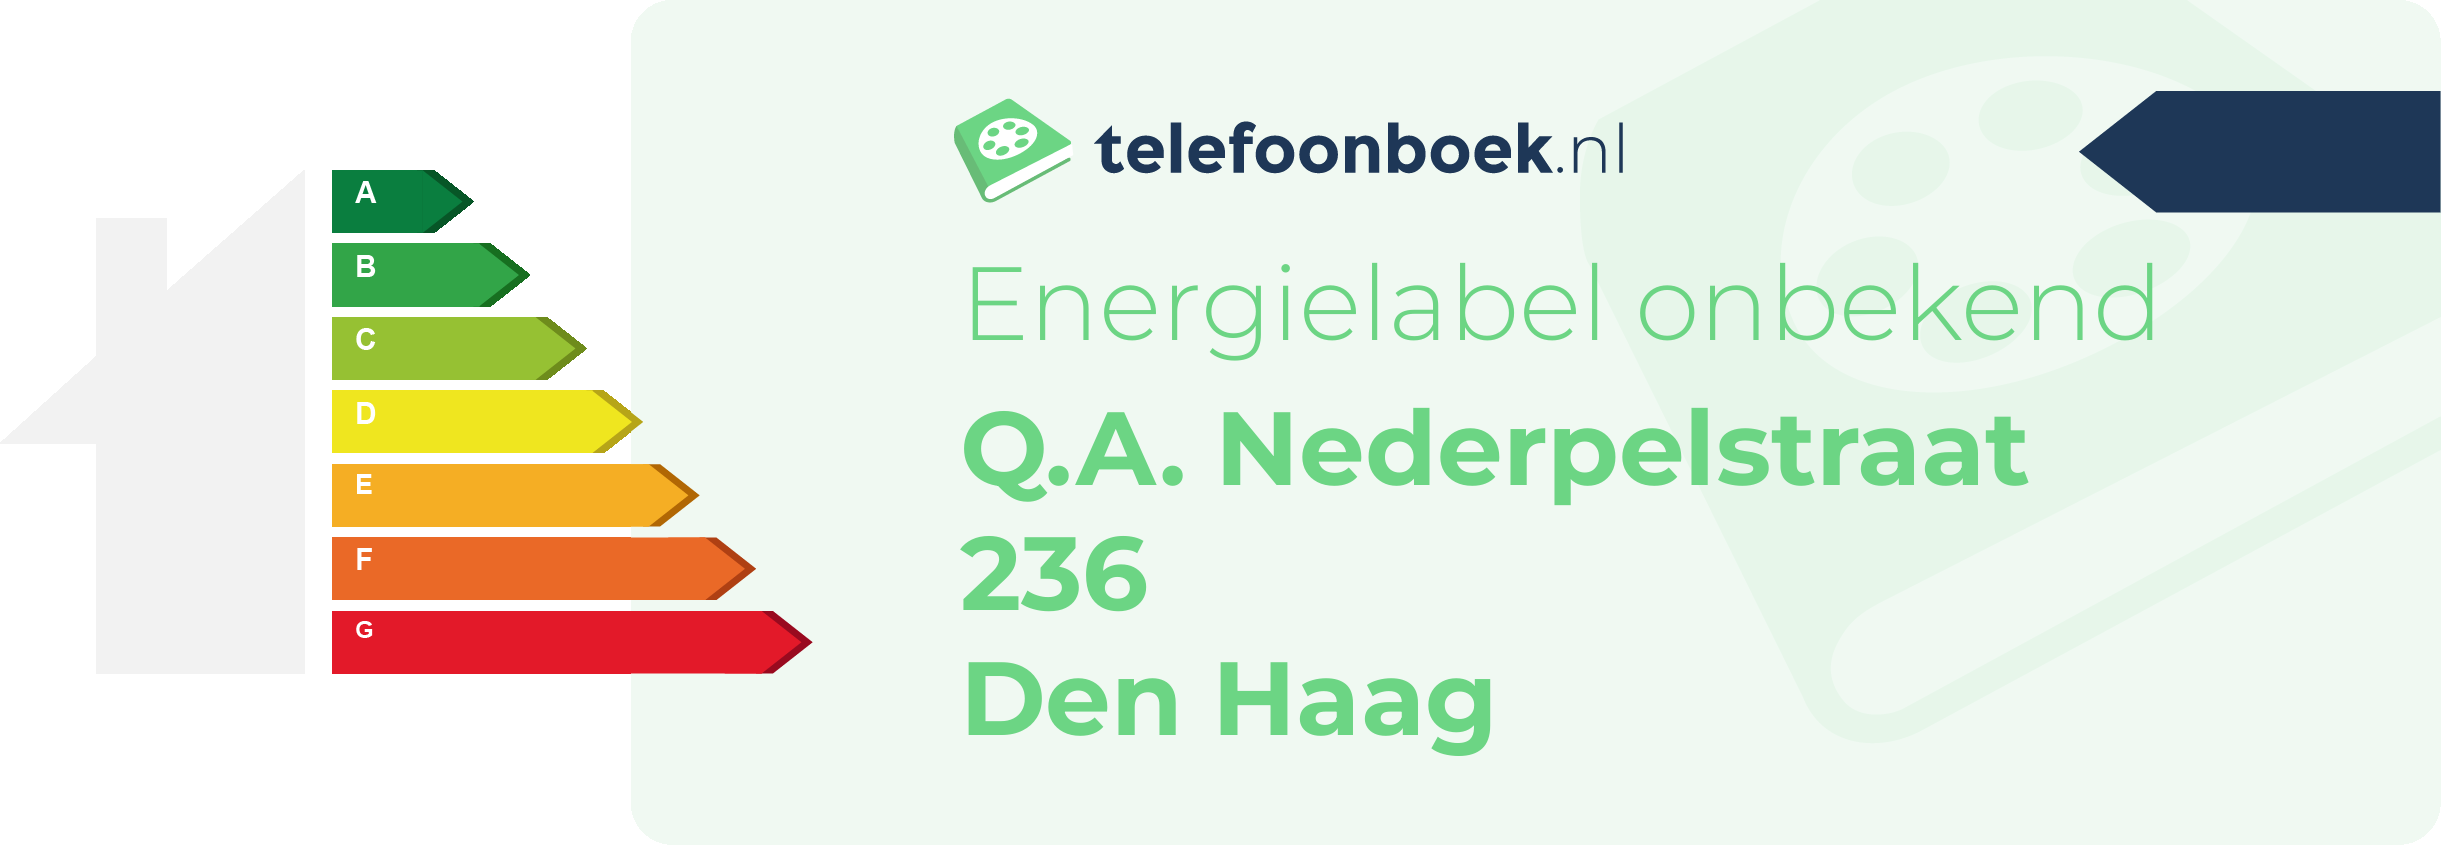 Energielabel Q.A. Nederpelstraat 236 Den Haag